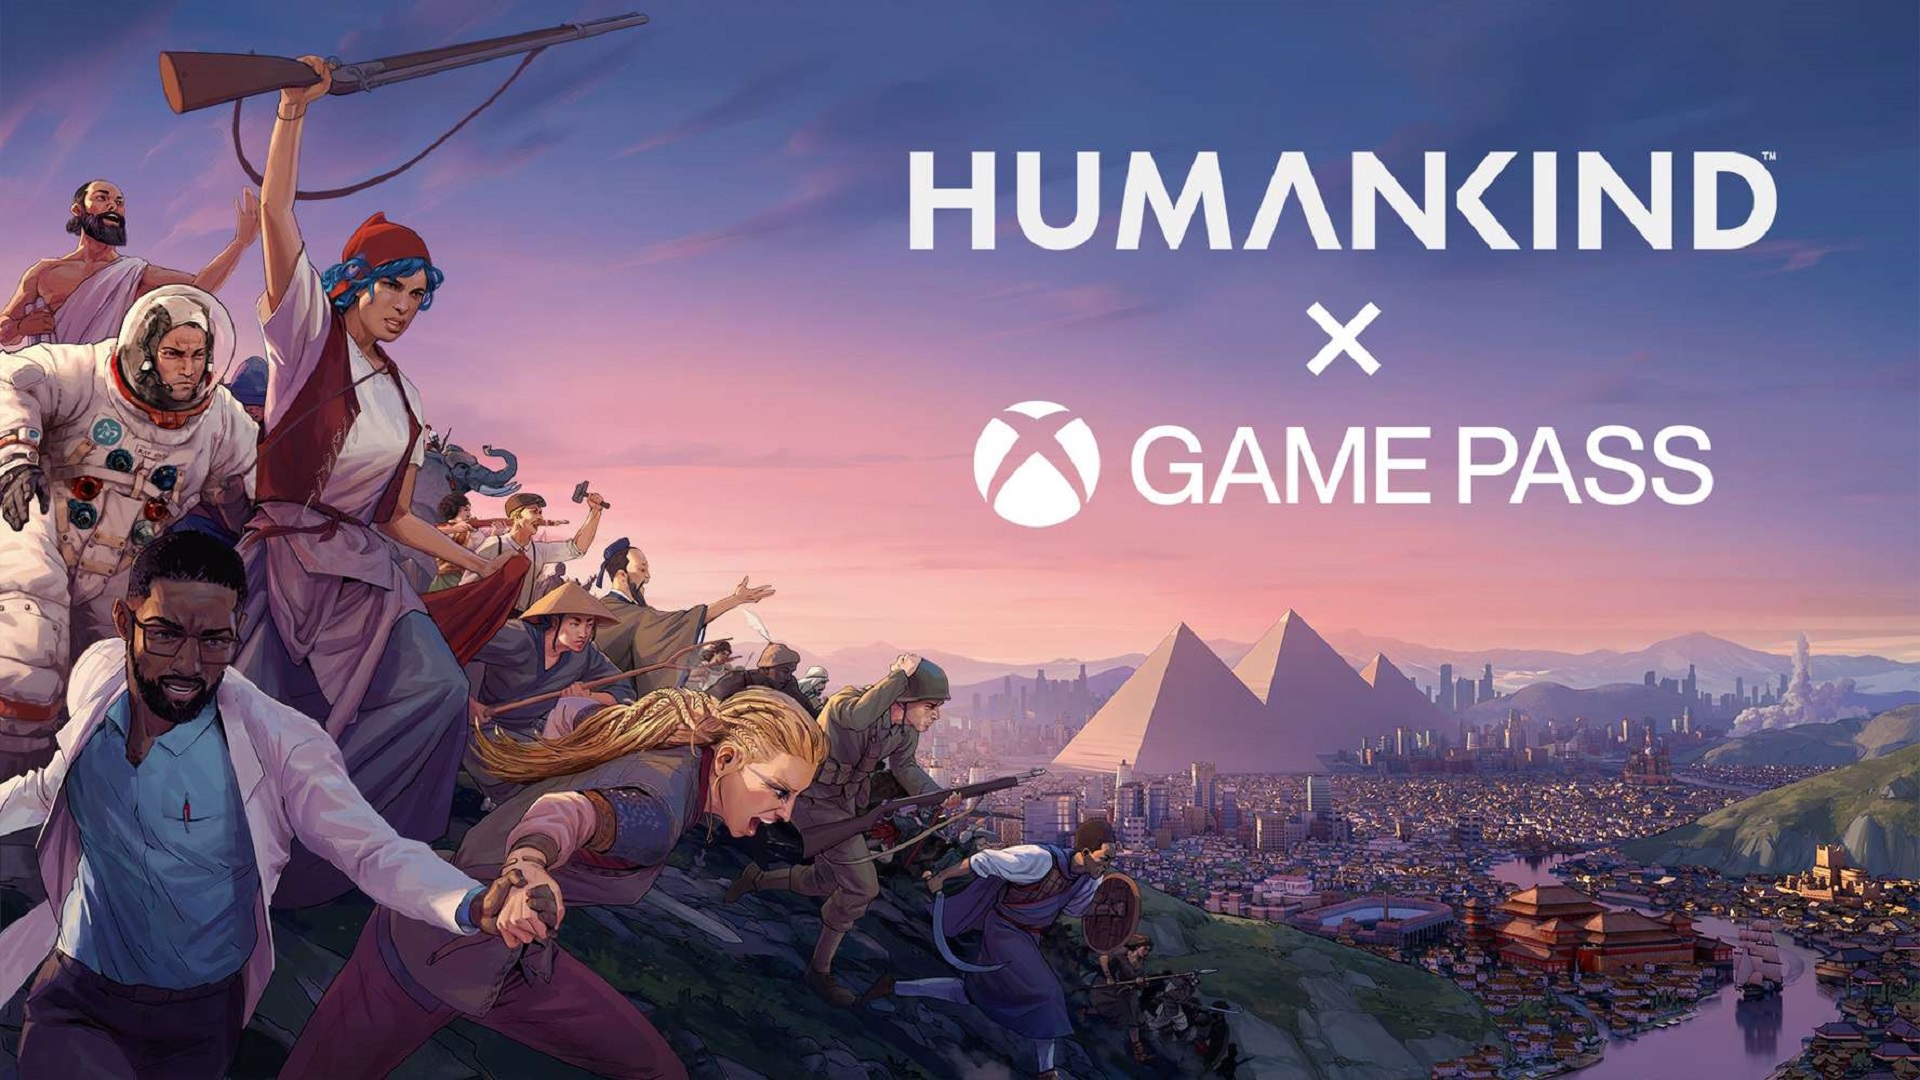 اضافه شدن بازی Humankind به ایکس باکس گیم پس پی سی در روز عرضه